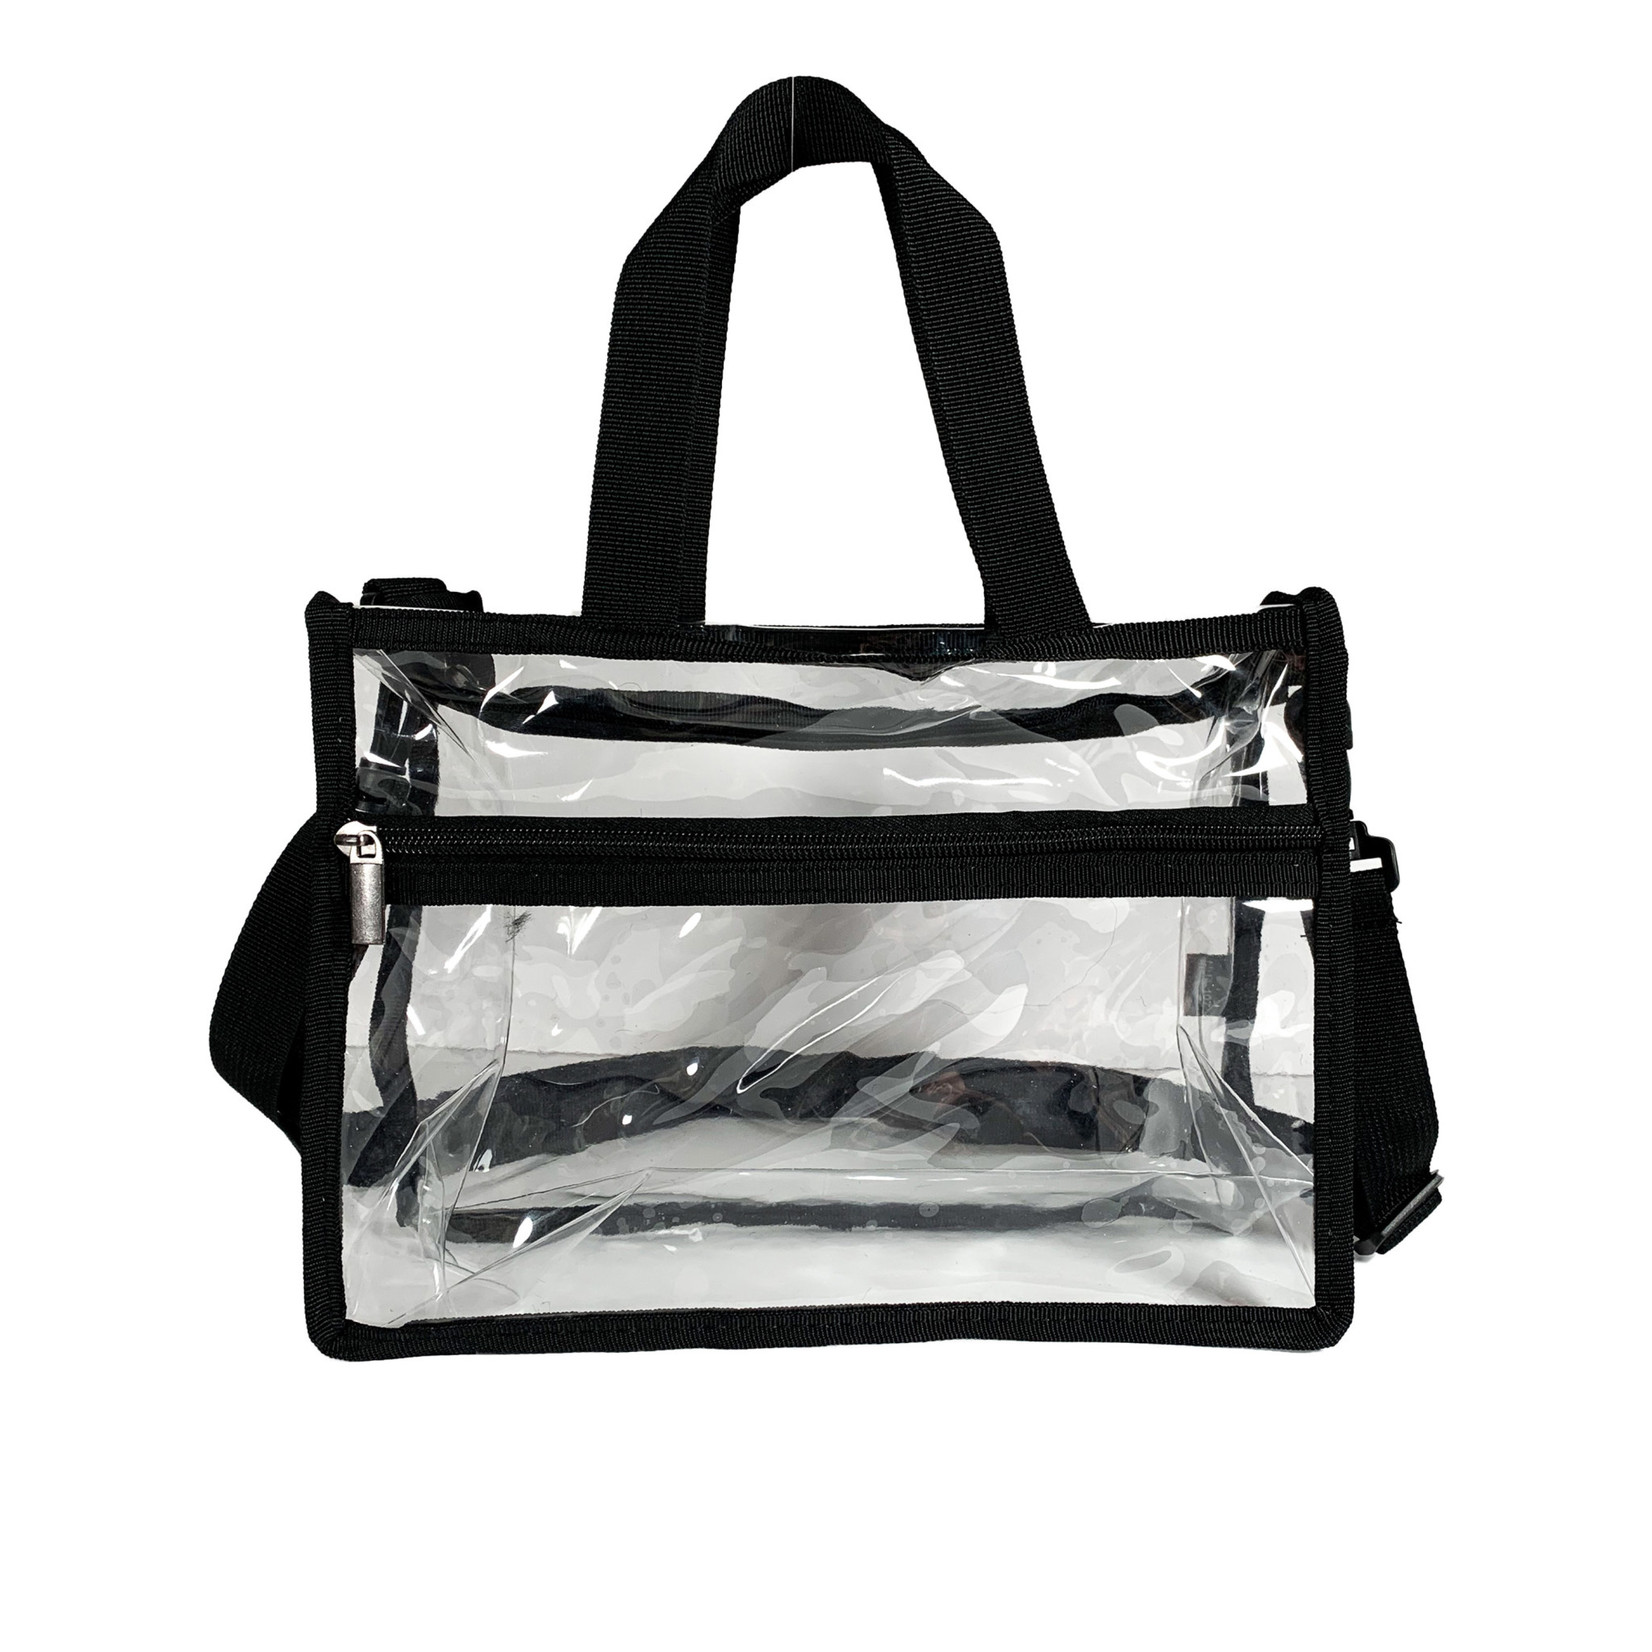 MUA Approved MUA-107 - Set Bag